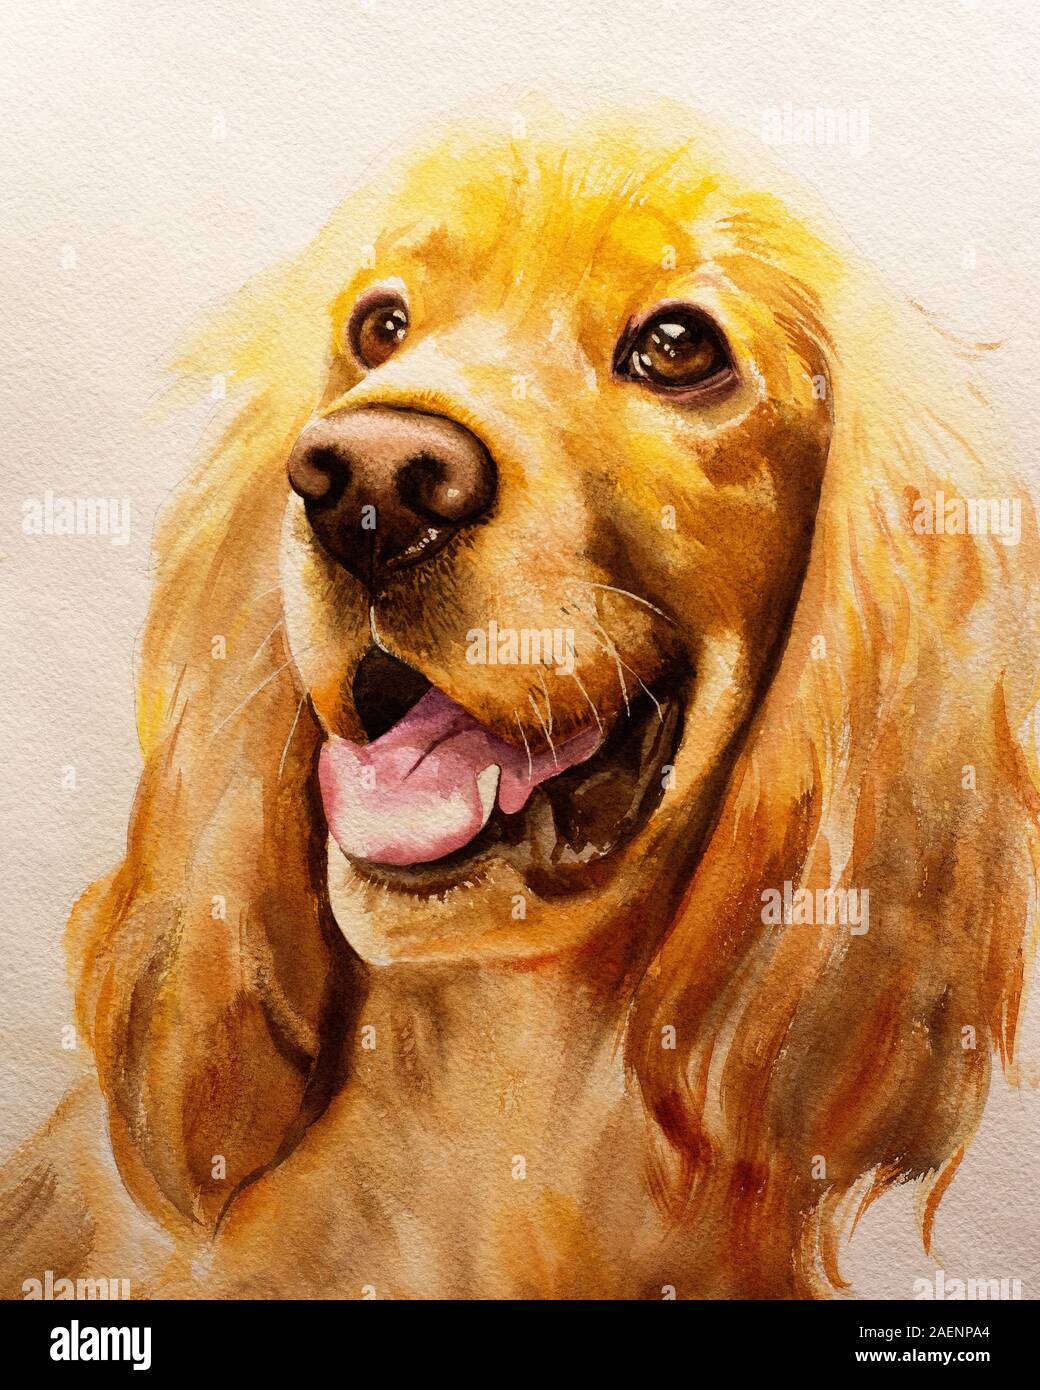 El perro de la raza Cocker Spaniel es de color dorado, pintado con  acuarelas sobre papel, estudia cuidadosamente en línea recta. Ilustración  para cartel, calendario Fotografía de stock - Alamy